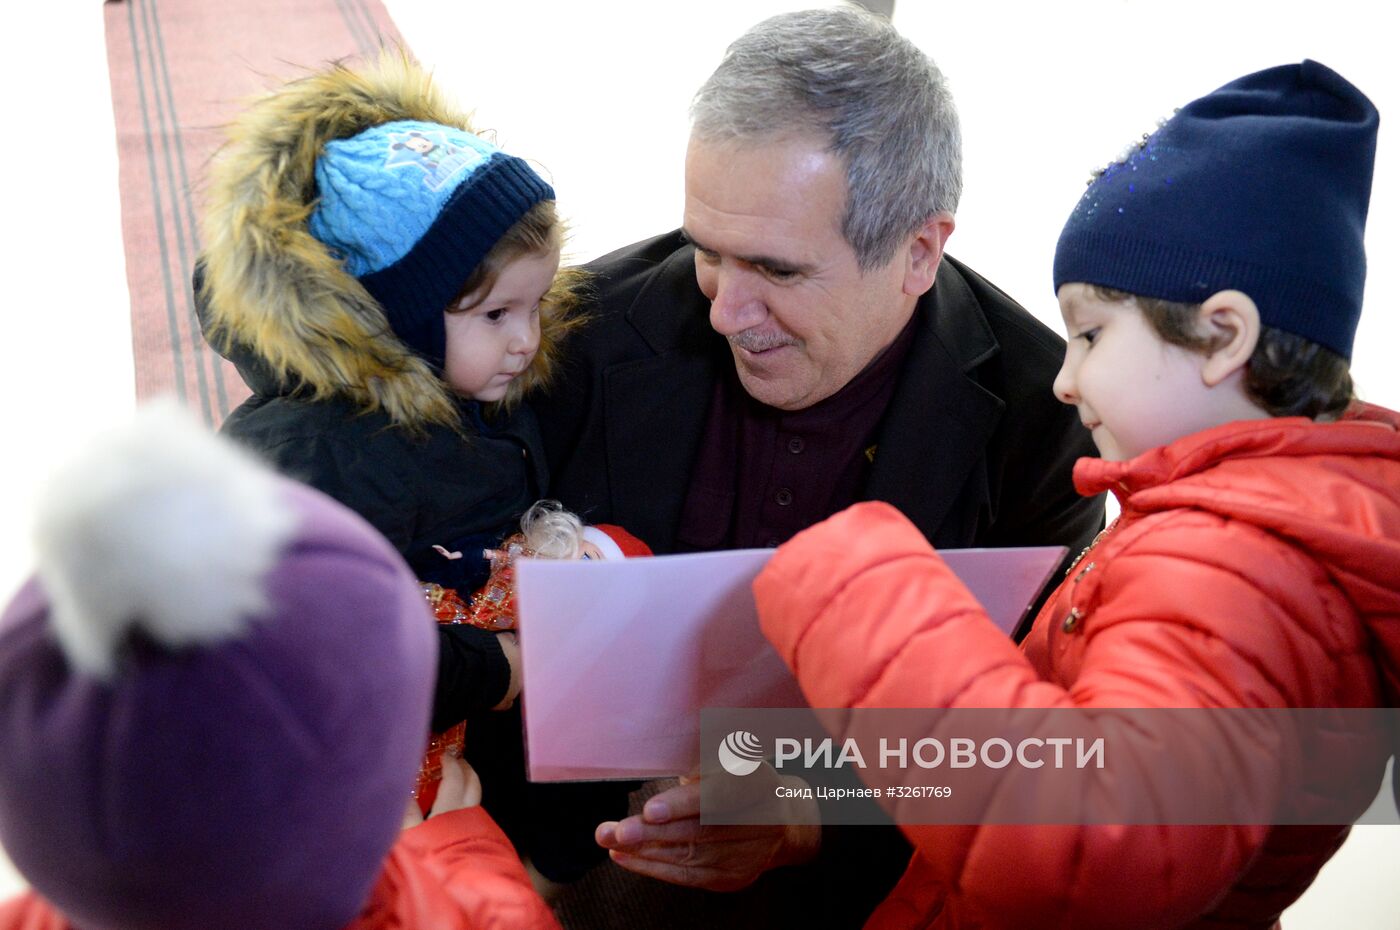 Спасенную в Ираке девочку из Дагестана передали родственникам в аэропорту Грозного